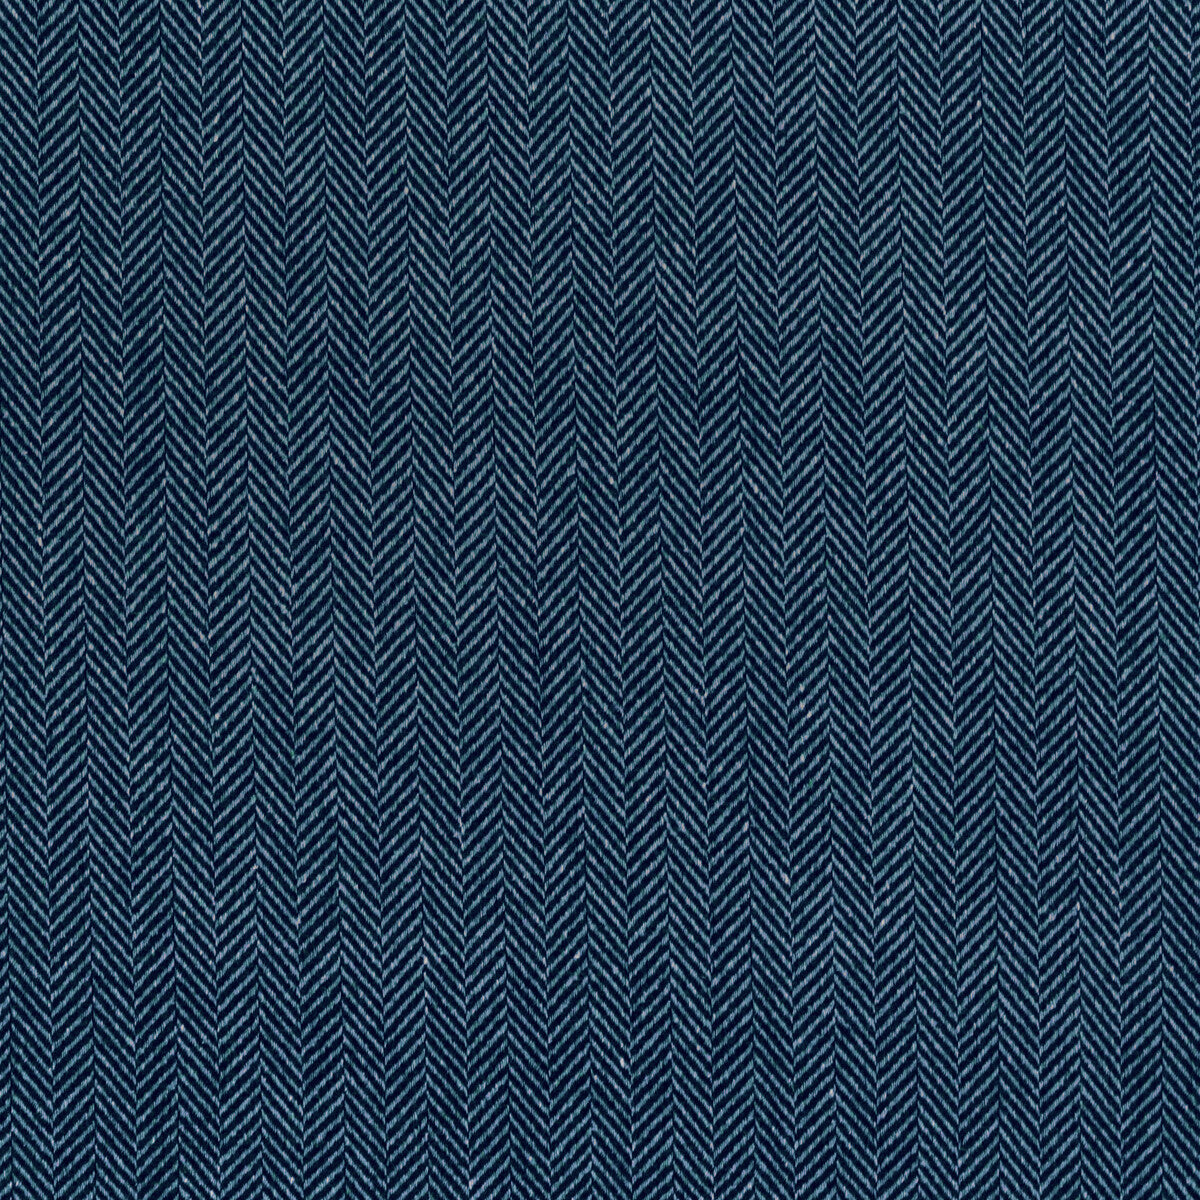 Kravet Design fabric in 36307-50 color - pattern 36307.50.0 - by Kravet Design